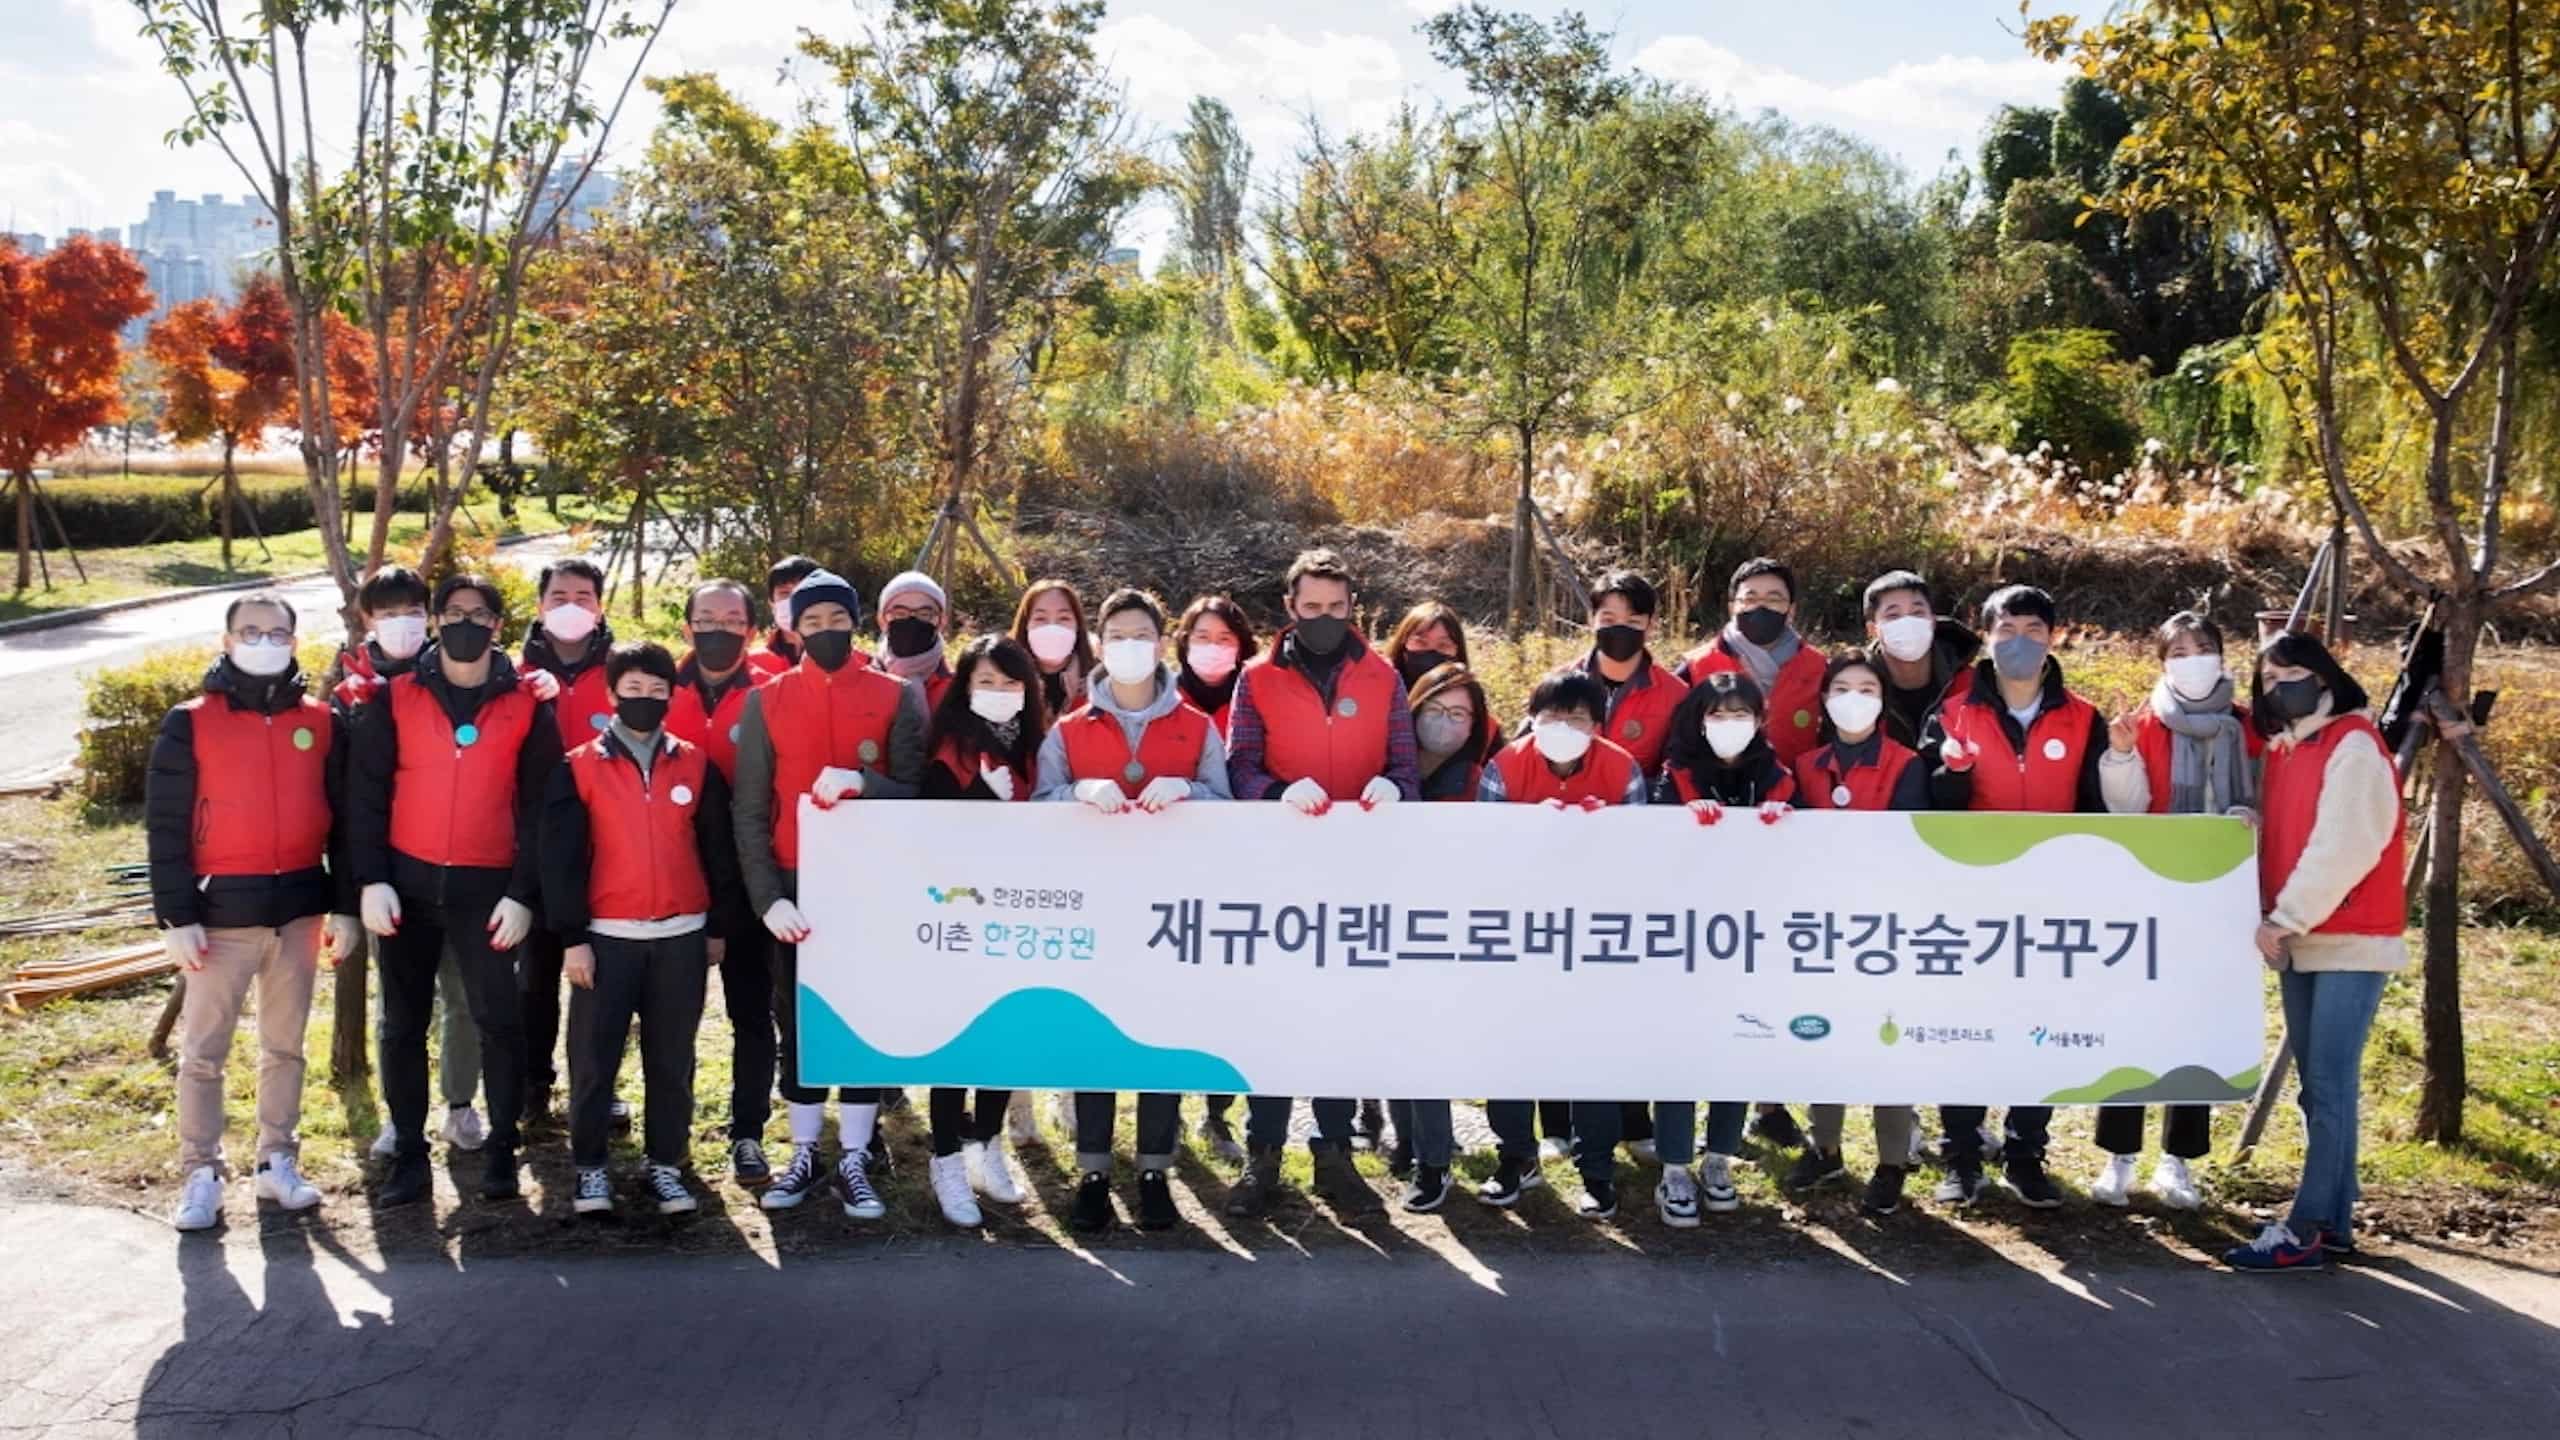 Jaguar Land Rover Korea volunteer standing with banner in hand